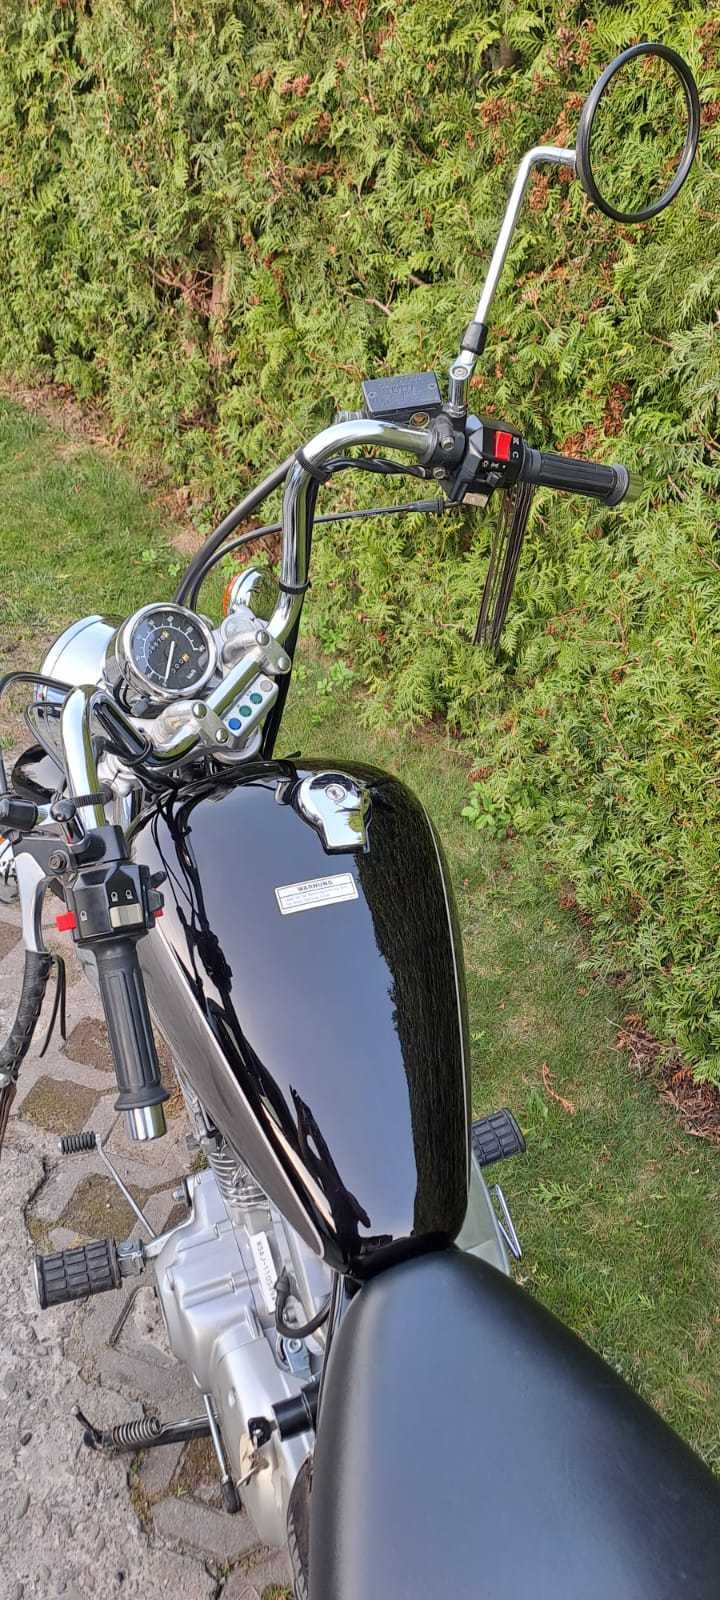 Motocykl Yamaha Virago sprowadzony z zagranicy.